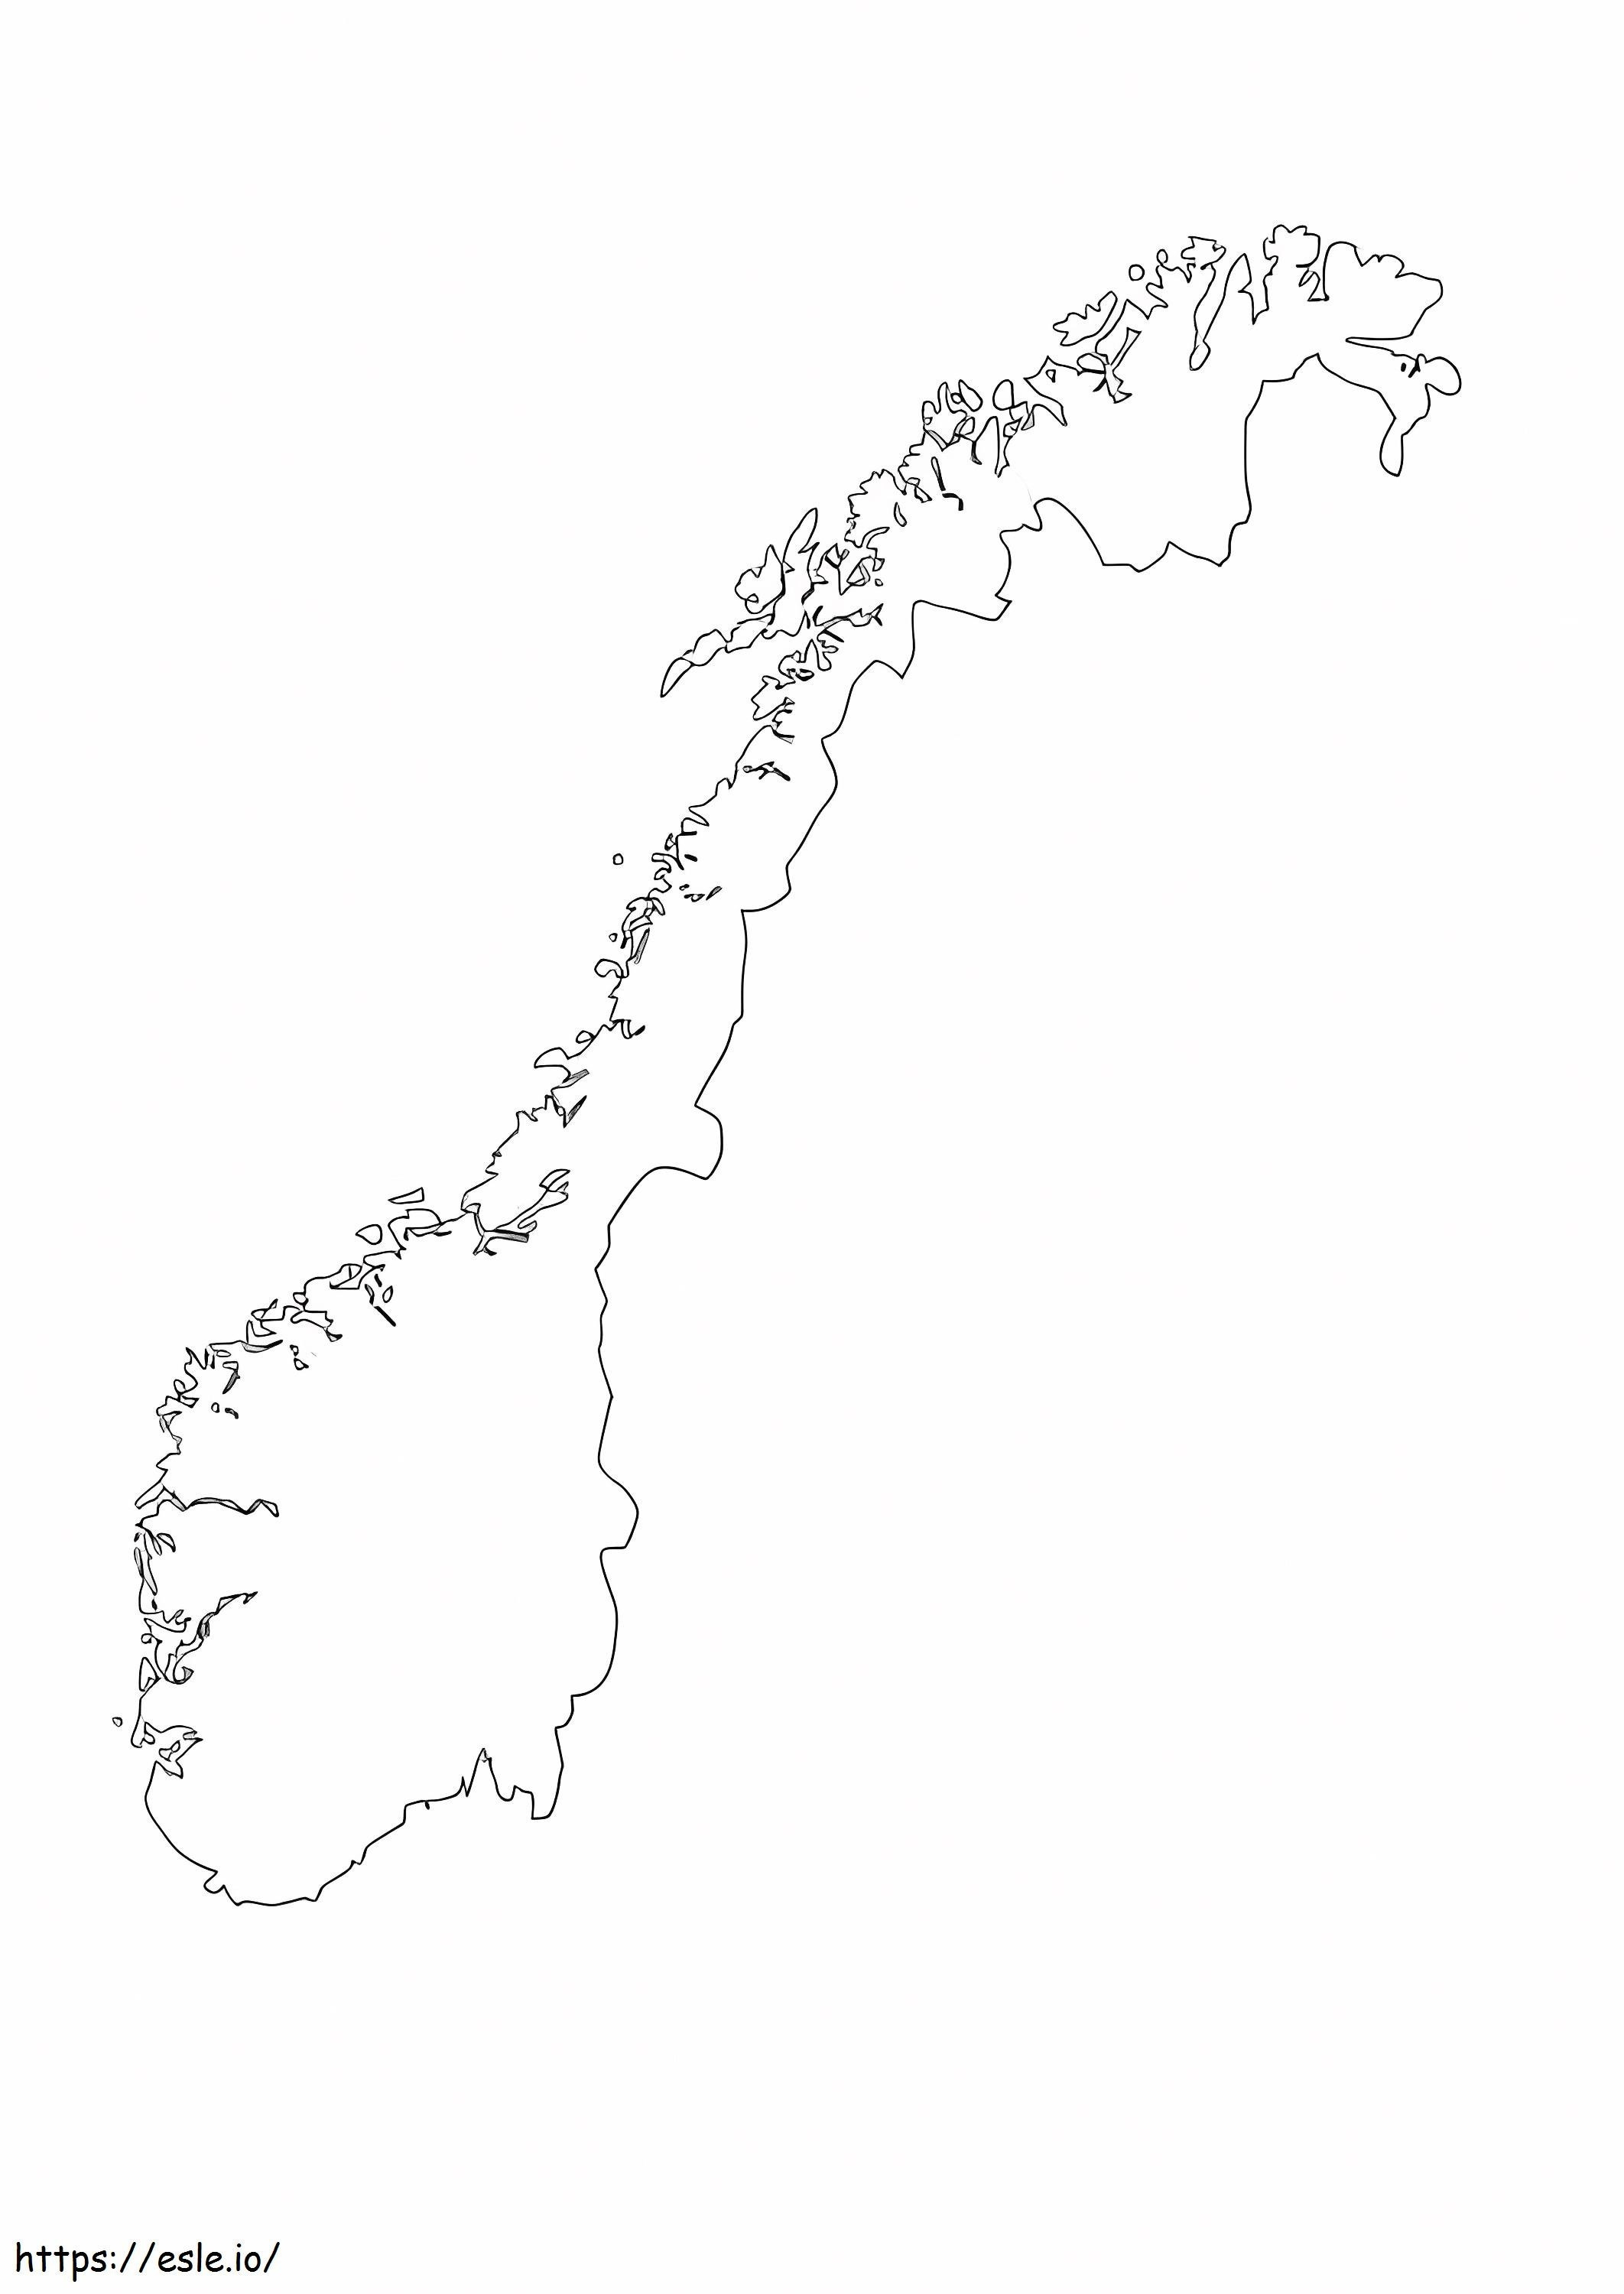 Mapa de Noruega 1 para colorear